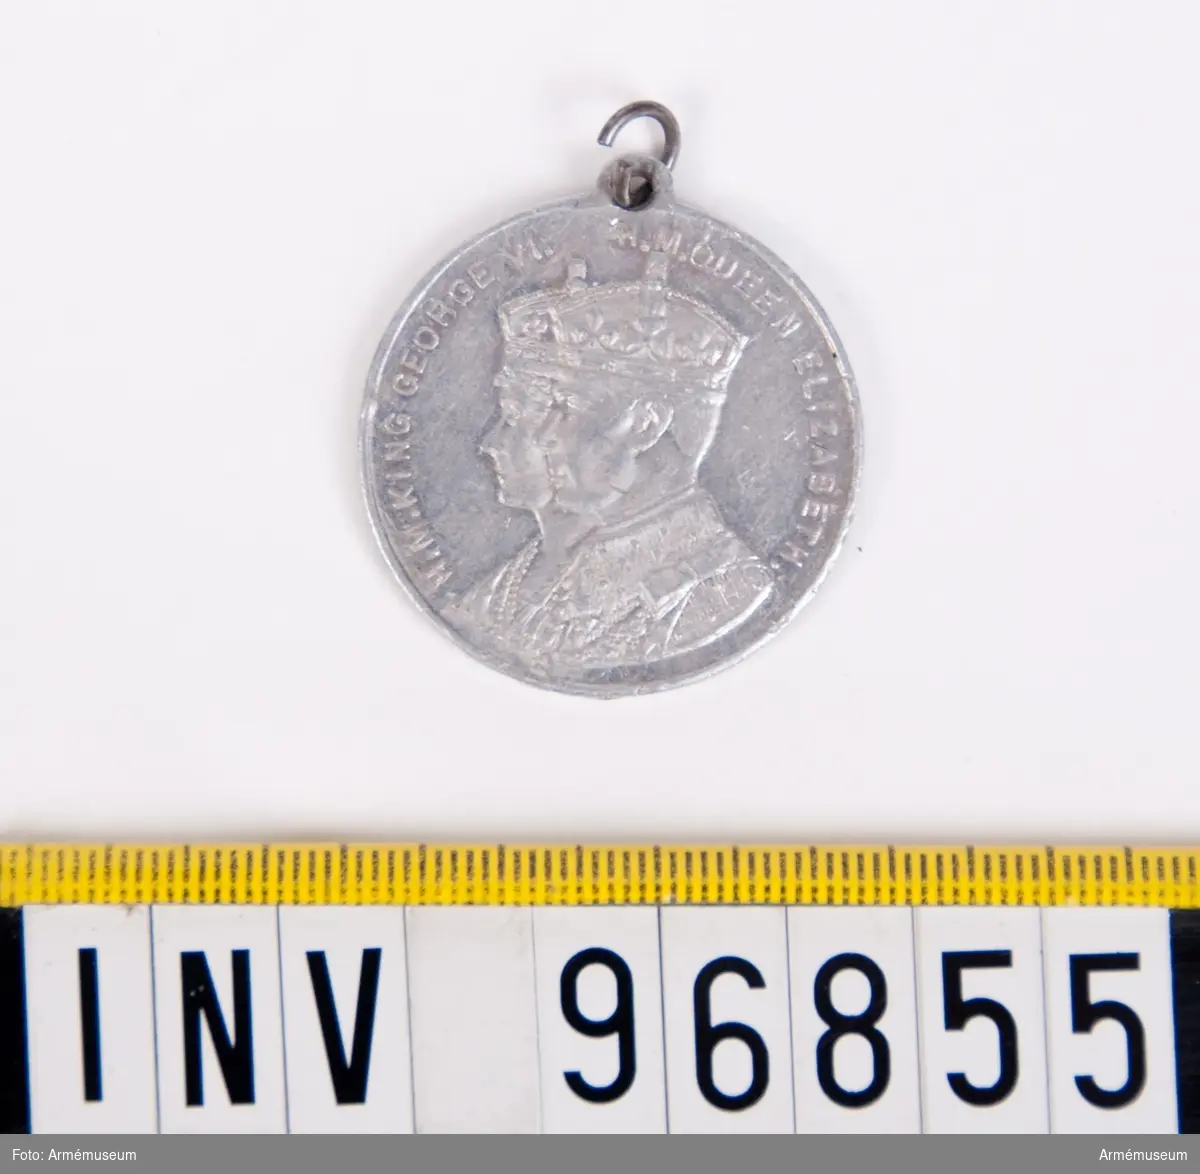 Medalj utan medaljband från Storbritannien med motiv av drottning Elizabeths kröning.